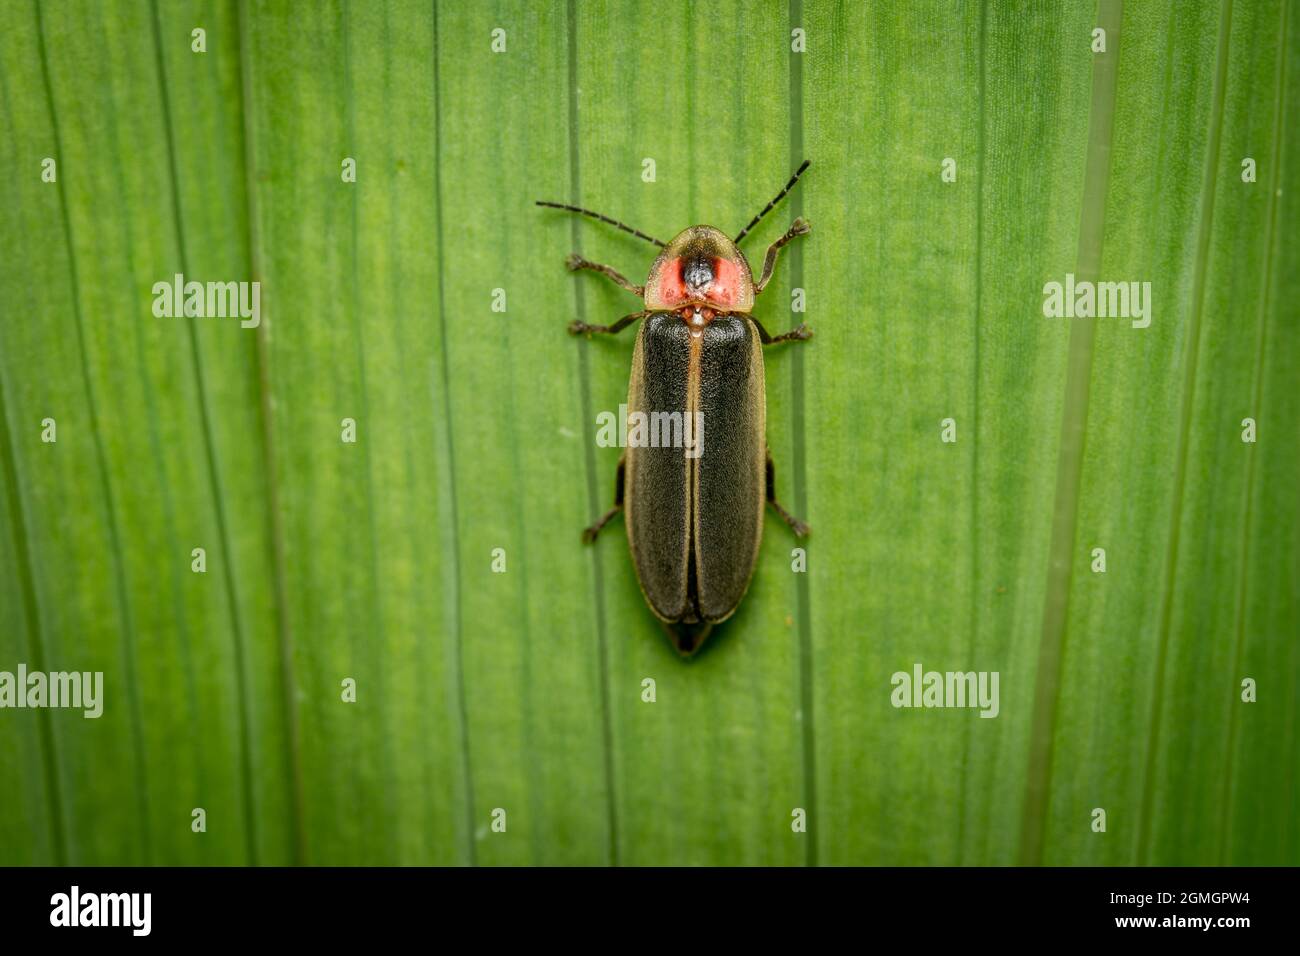 Ein Blick von oben auf einen Firefly oder Lightning Bug auf einer grünen Pflanze. Stockfoto